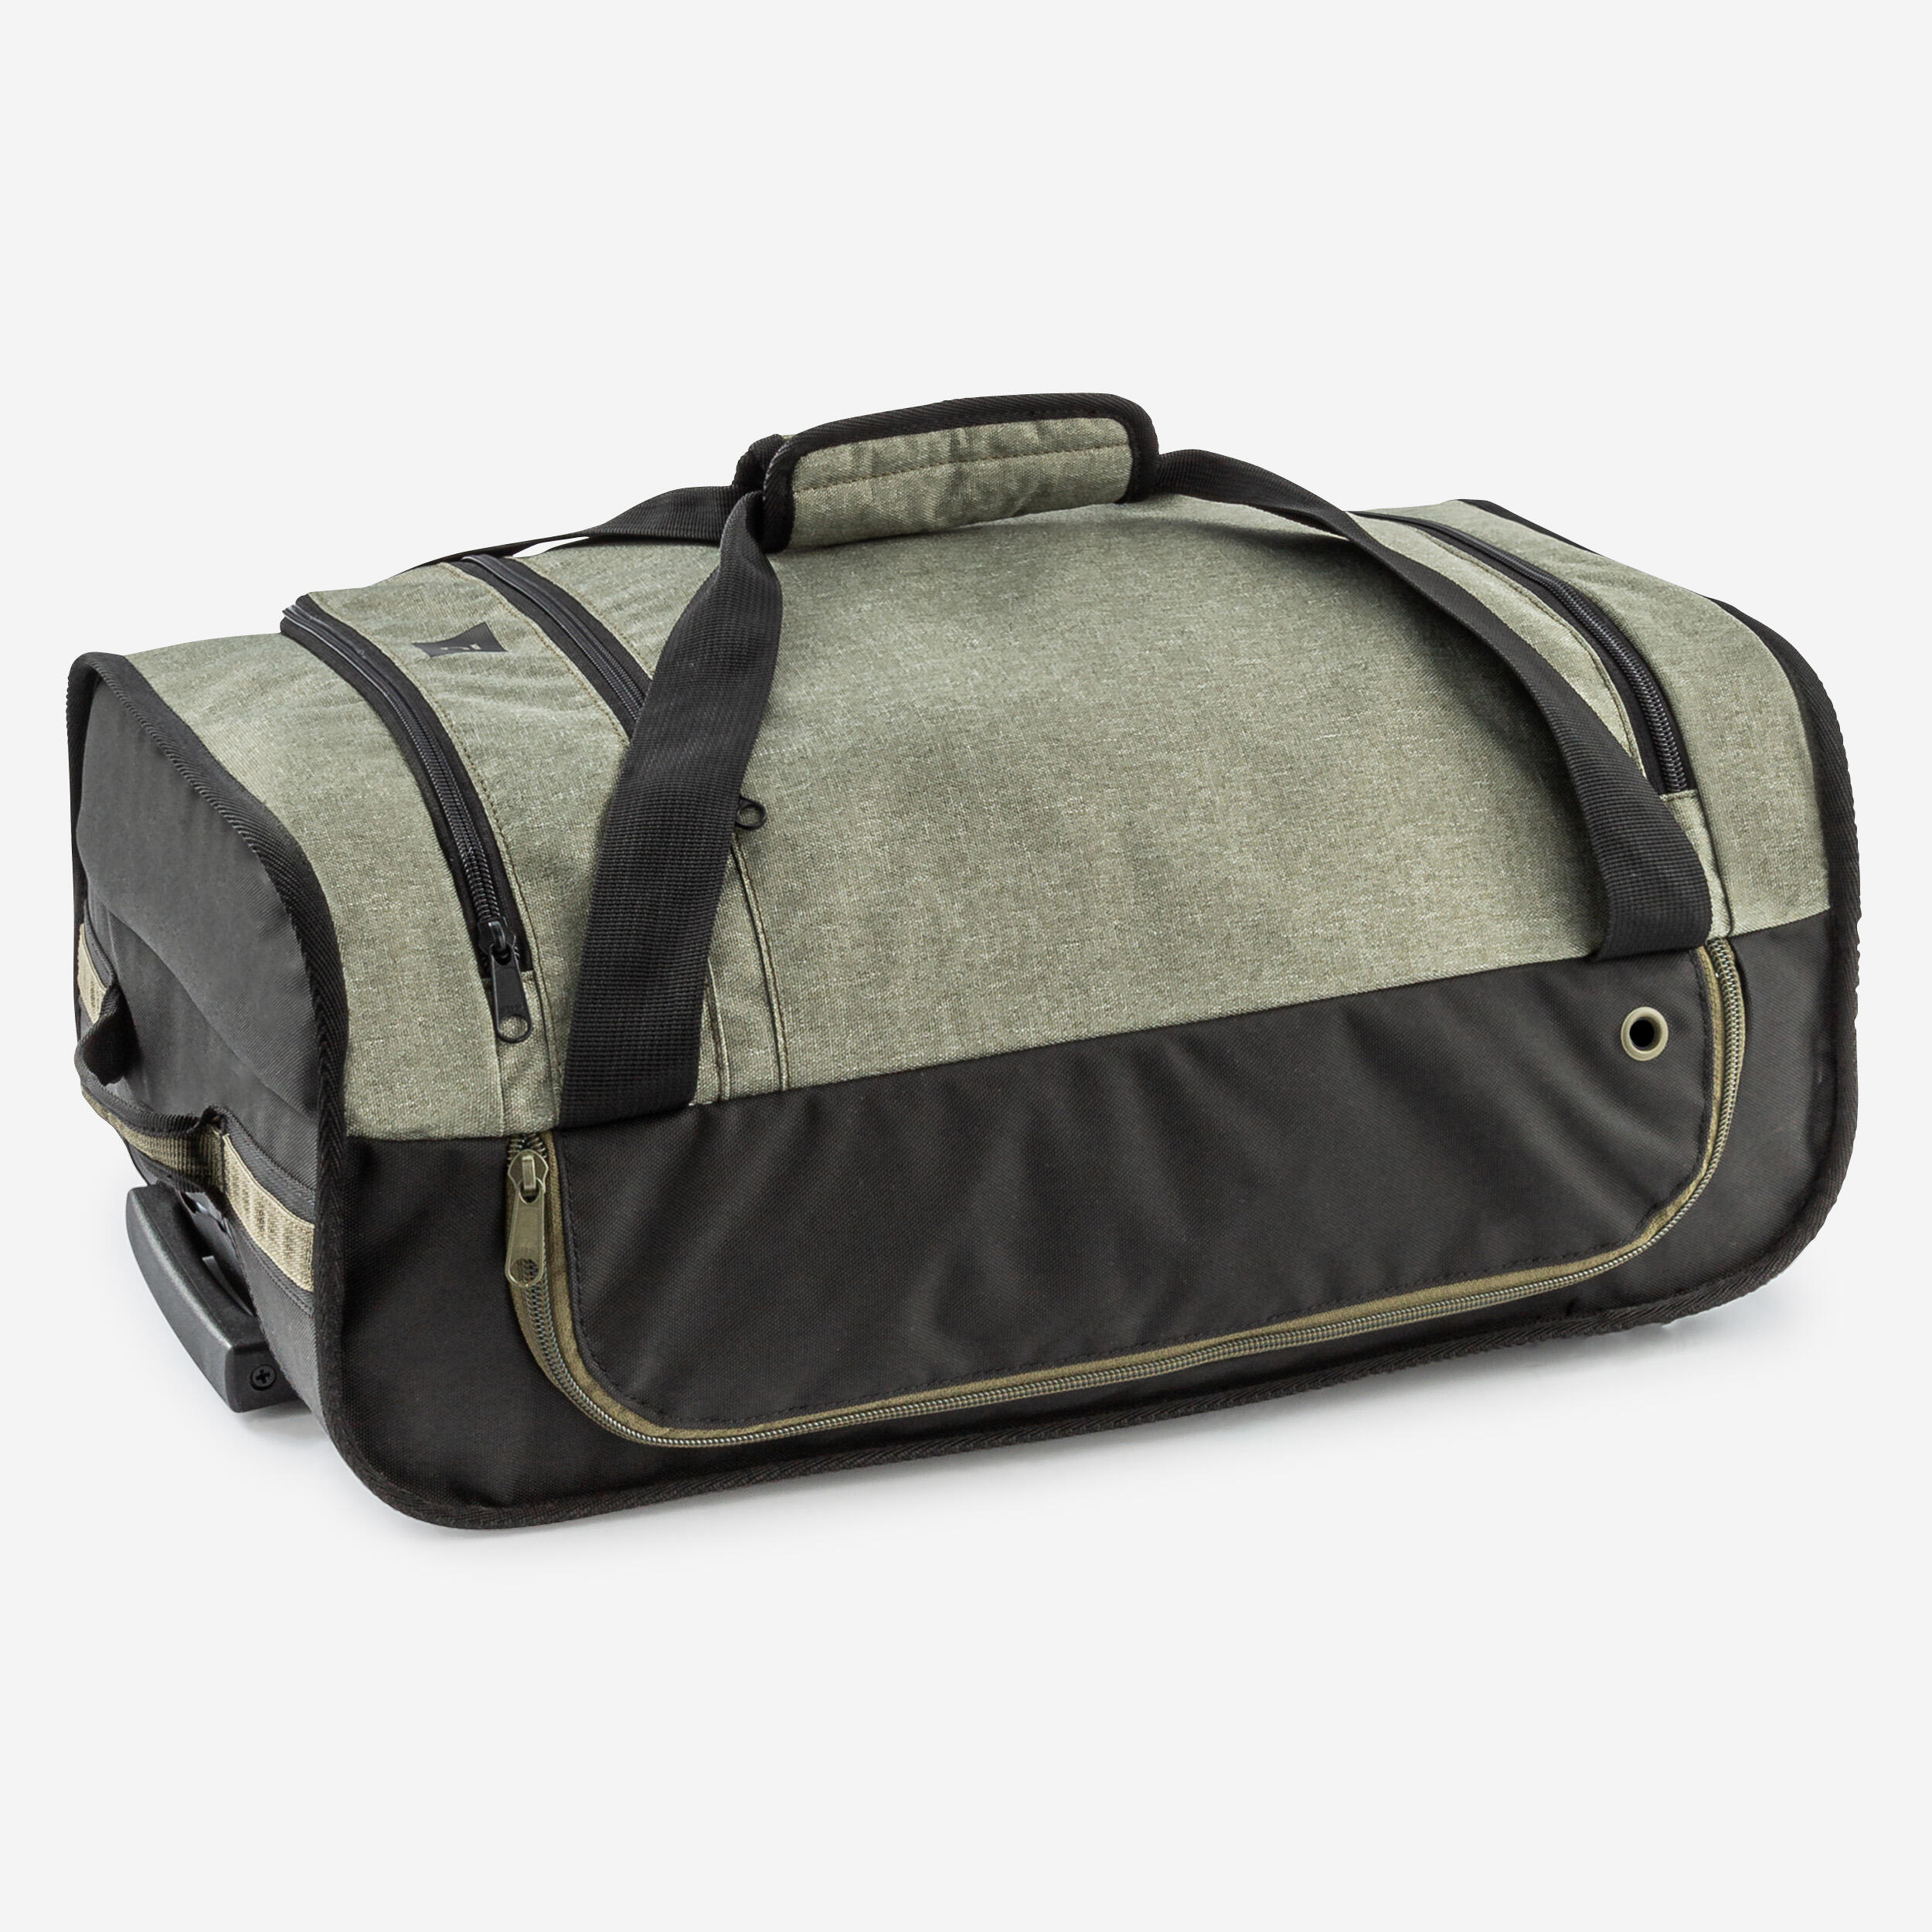 30L Suitcase Essential - Black/Khaki 5/11